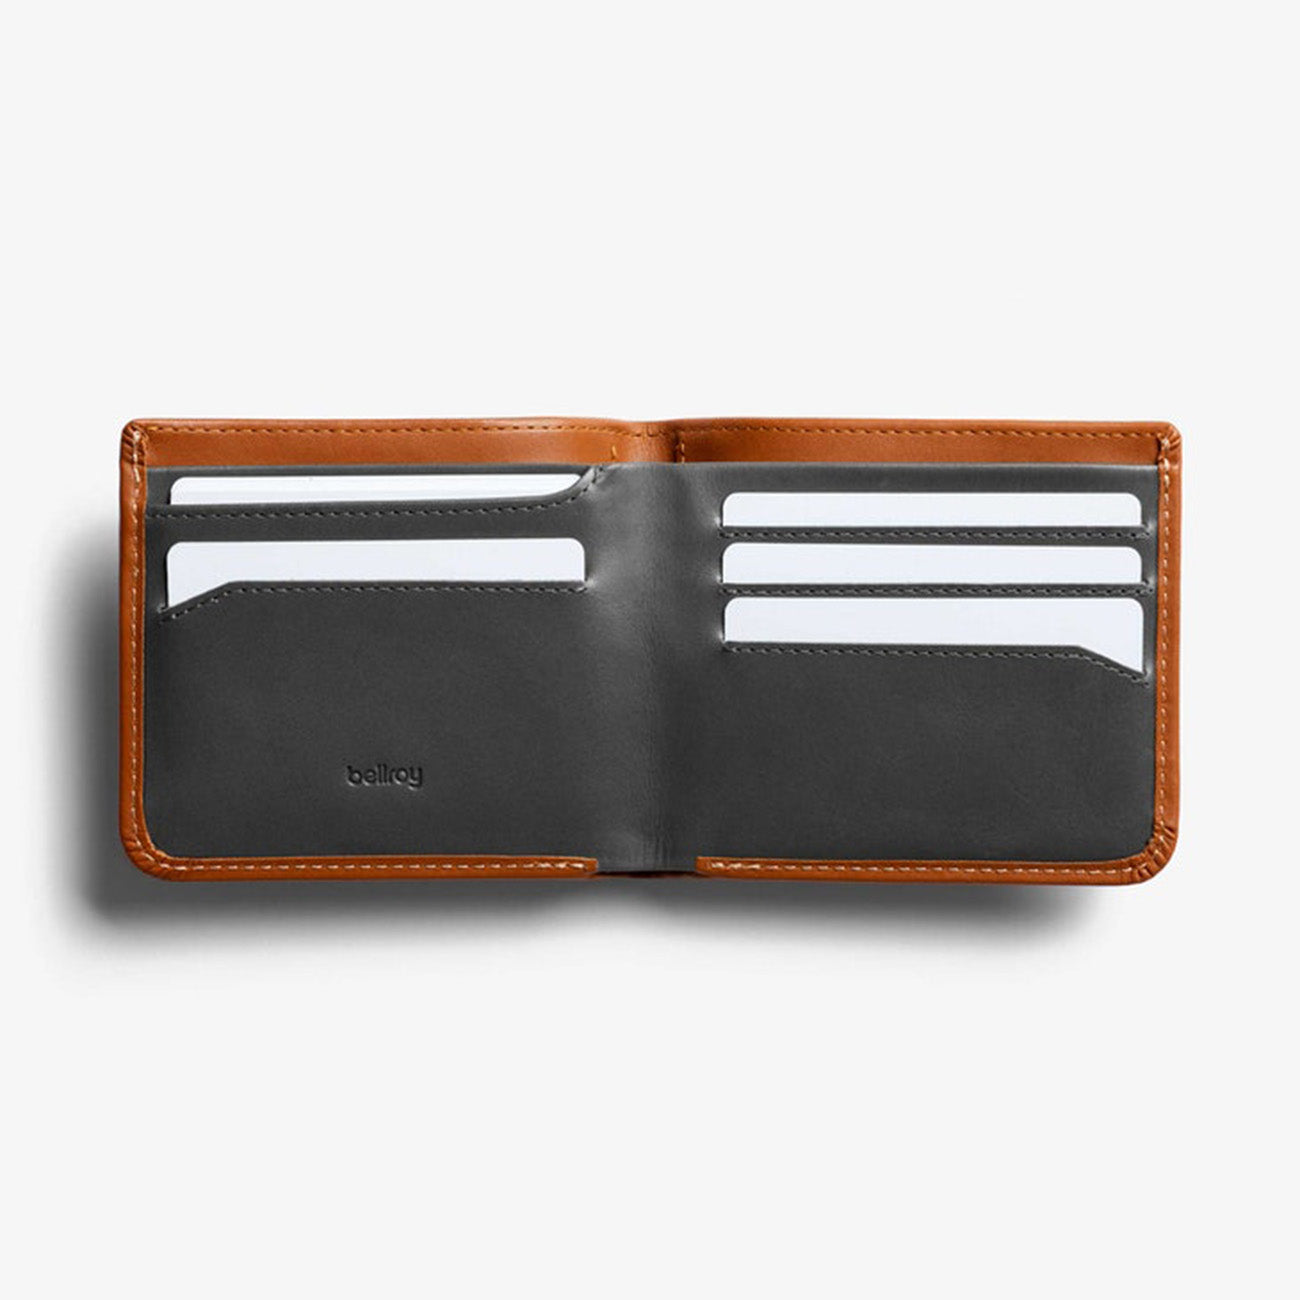 Hide & Seek HI Wallet RFID - Caramel